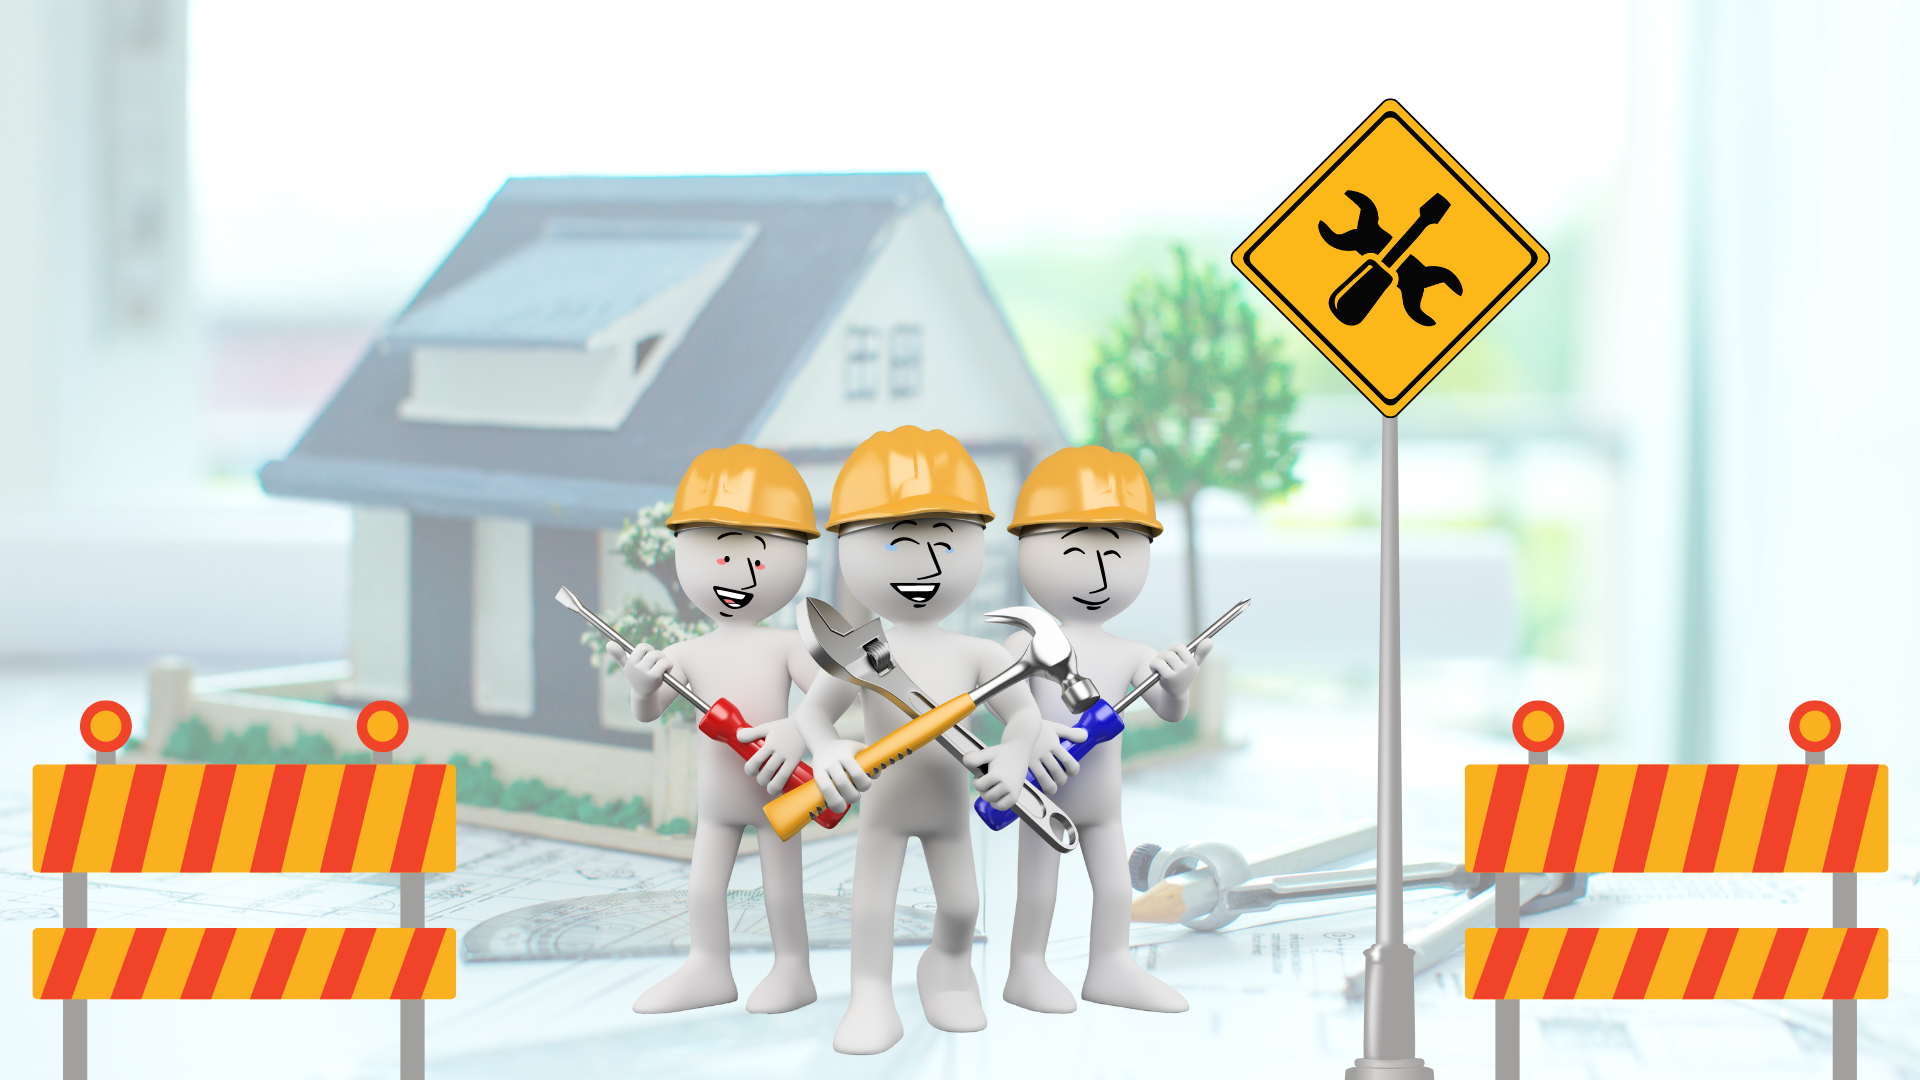 Imagem que ilustra trabalhadores de uma construção, simbolisando que a página do site está em construção.